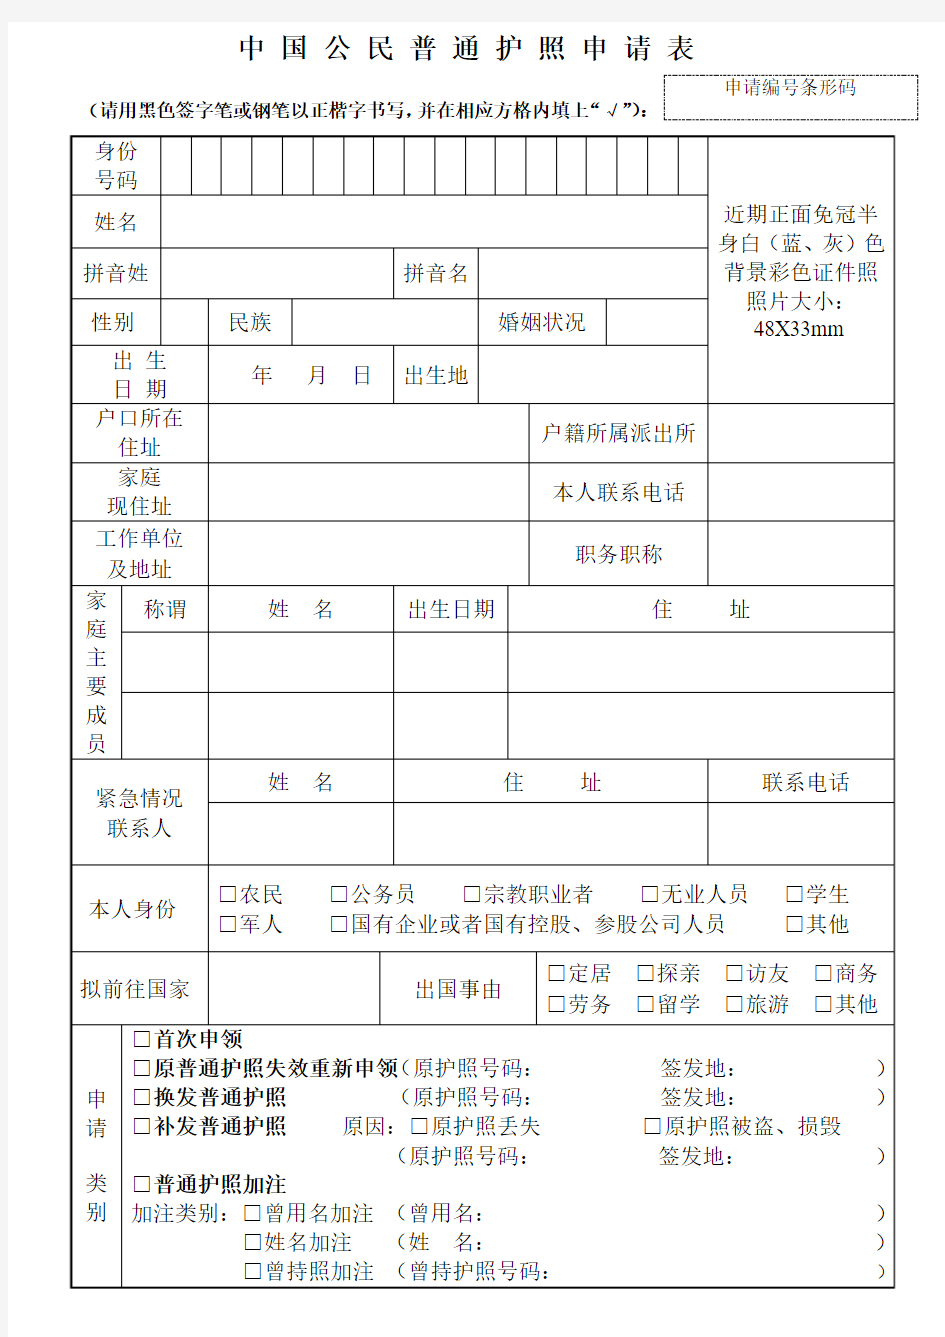 中国公民普通护照申请表-天津出入境管理局